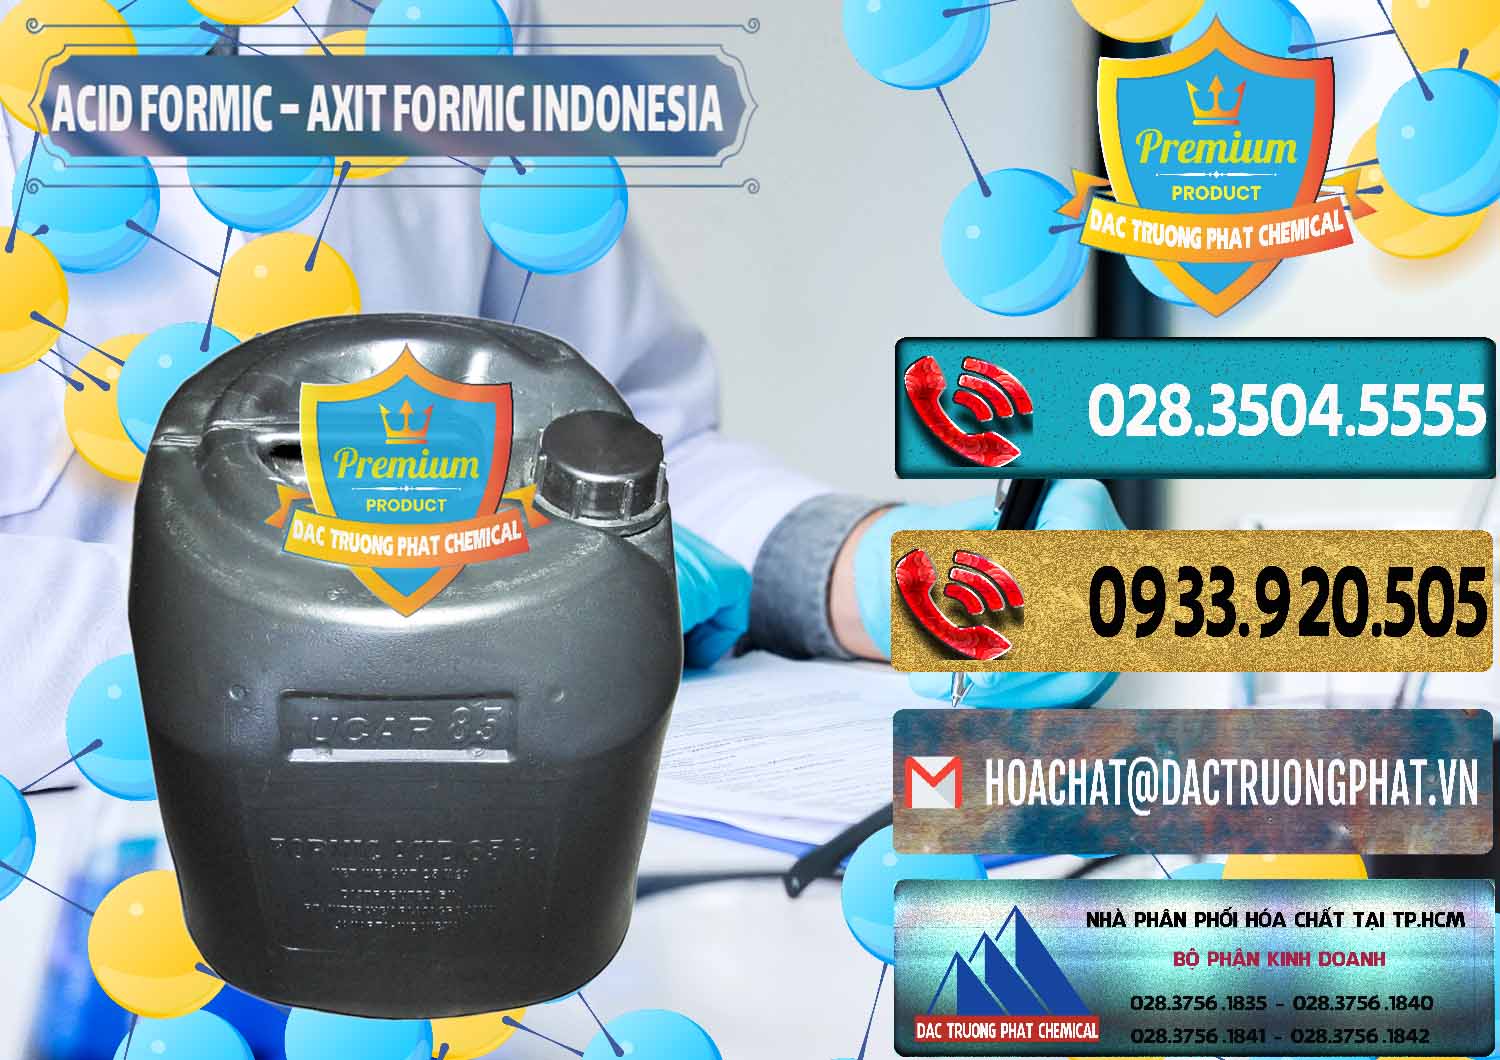 Công ty cung cấp và bán Acid Formic - Axit Formic Indonesia - 0026 - Công ty chuyên bán & phân phối hóa chất tại TP.HCM - hoachatdetnhuom.com